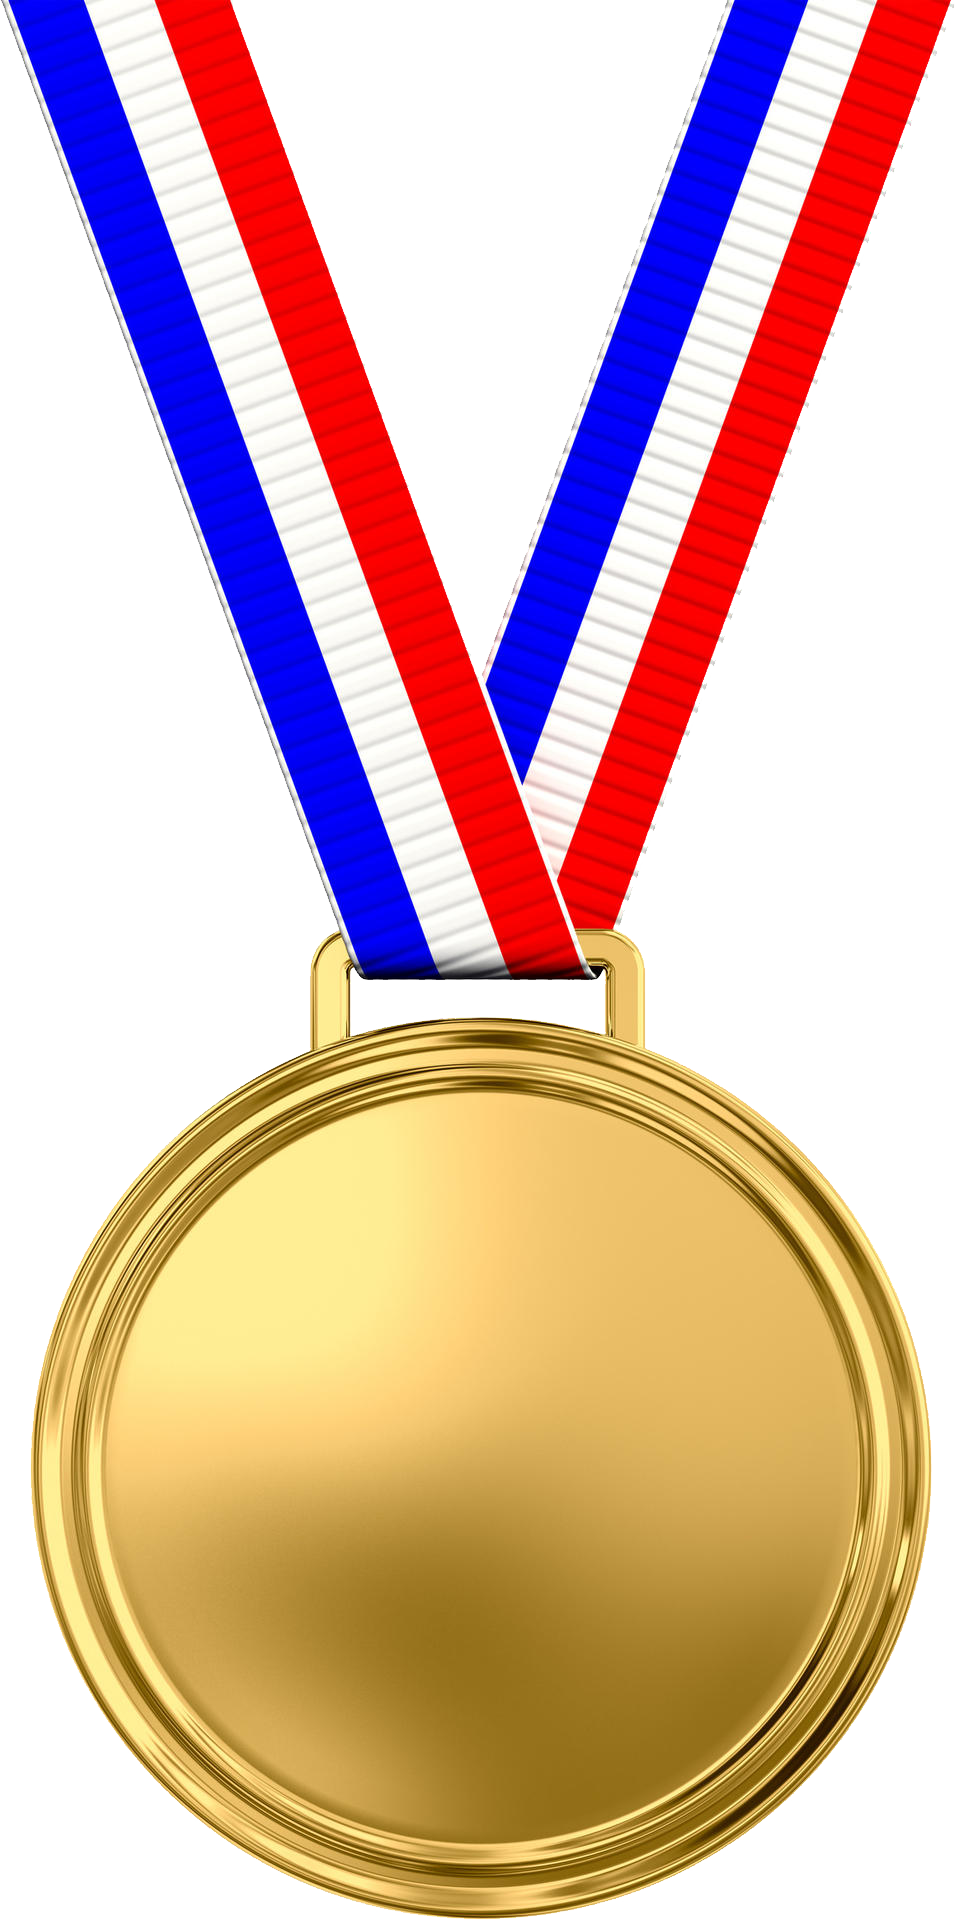 स्वर्ण पदक